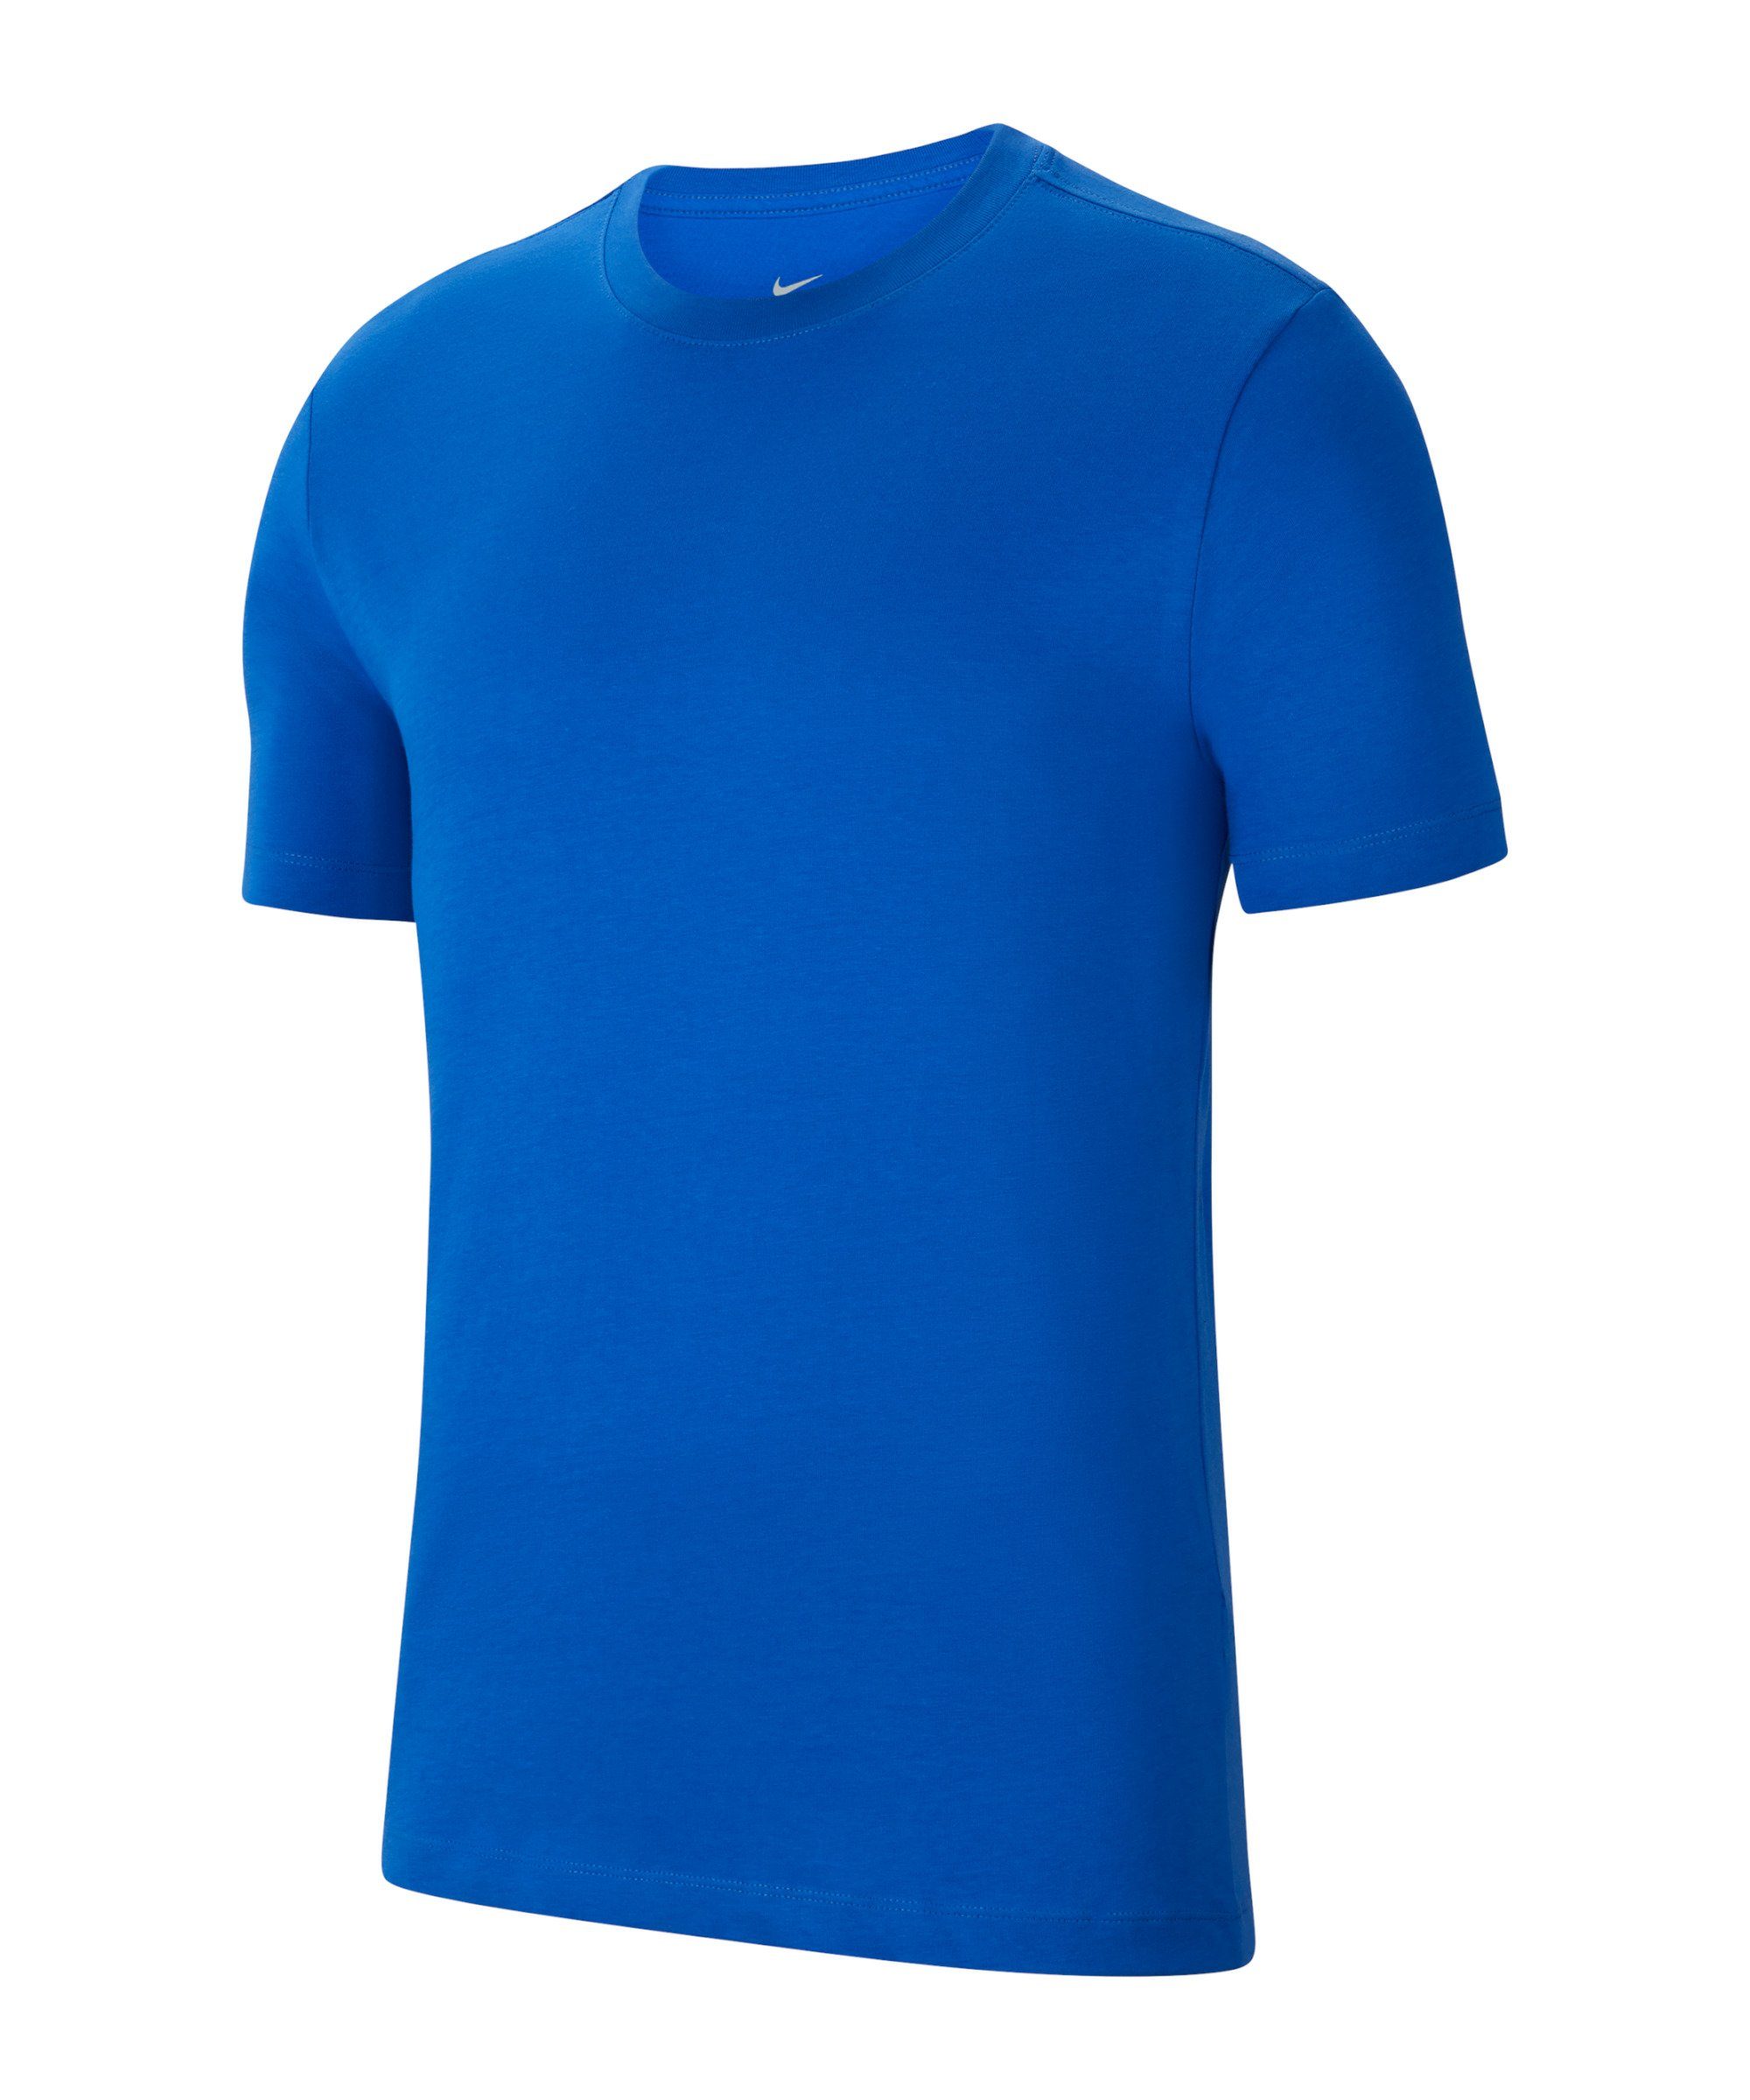 Super beliebt und 100 % Qualität garantiert! Nike T-Shirt Park 20 blau T-Shirt default